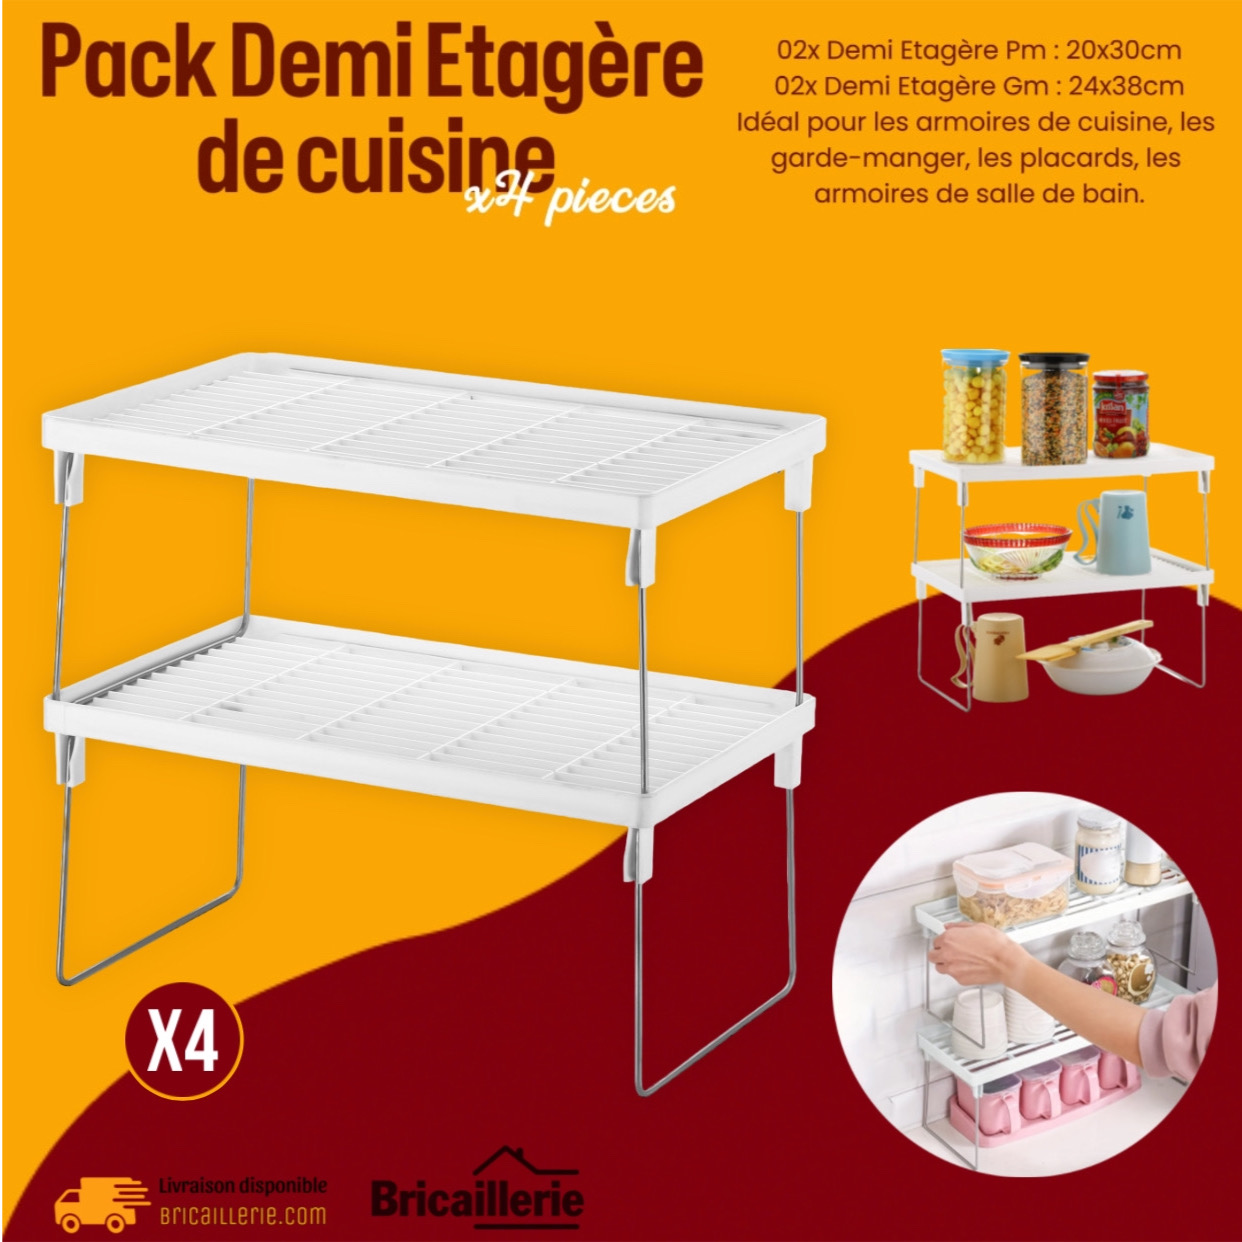 Pack 04x Demi Etagère de cuisine Pliable en plastique - Bricaillerie